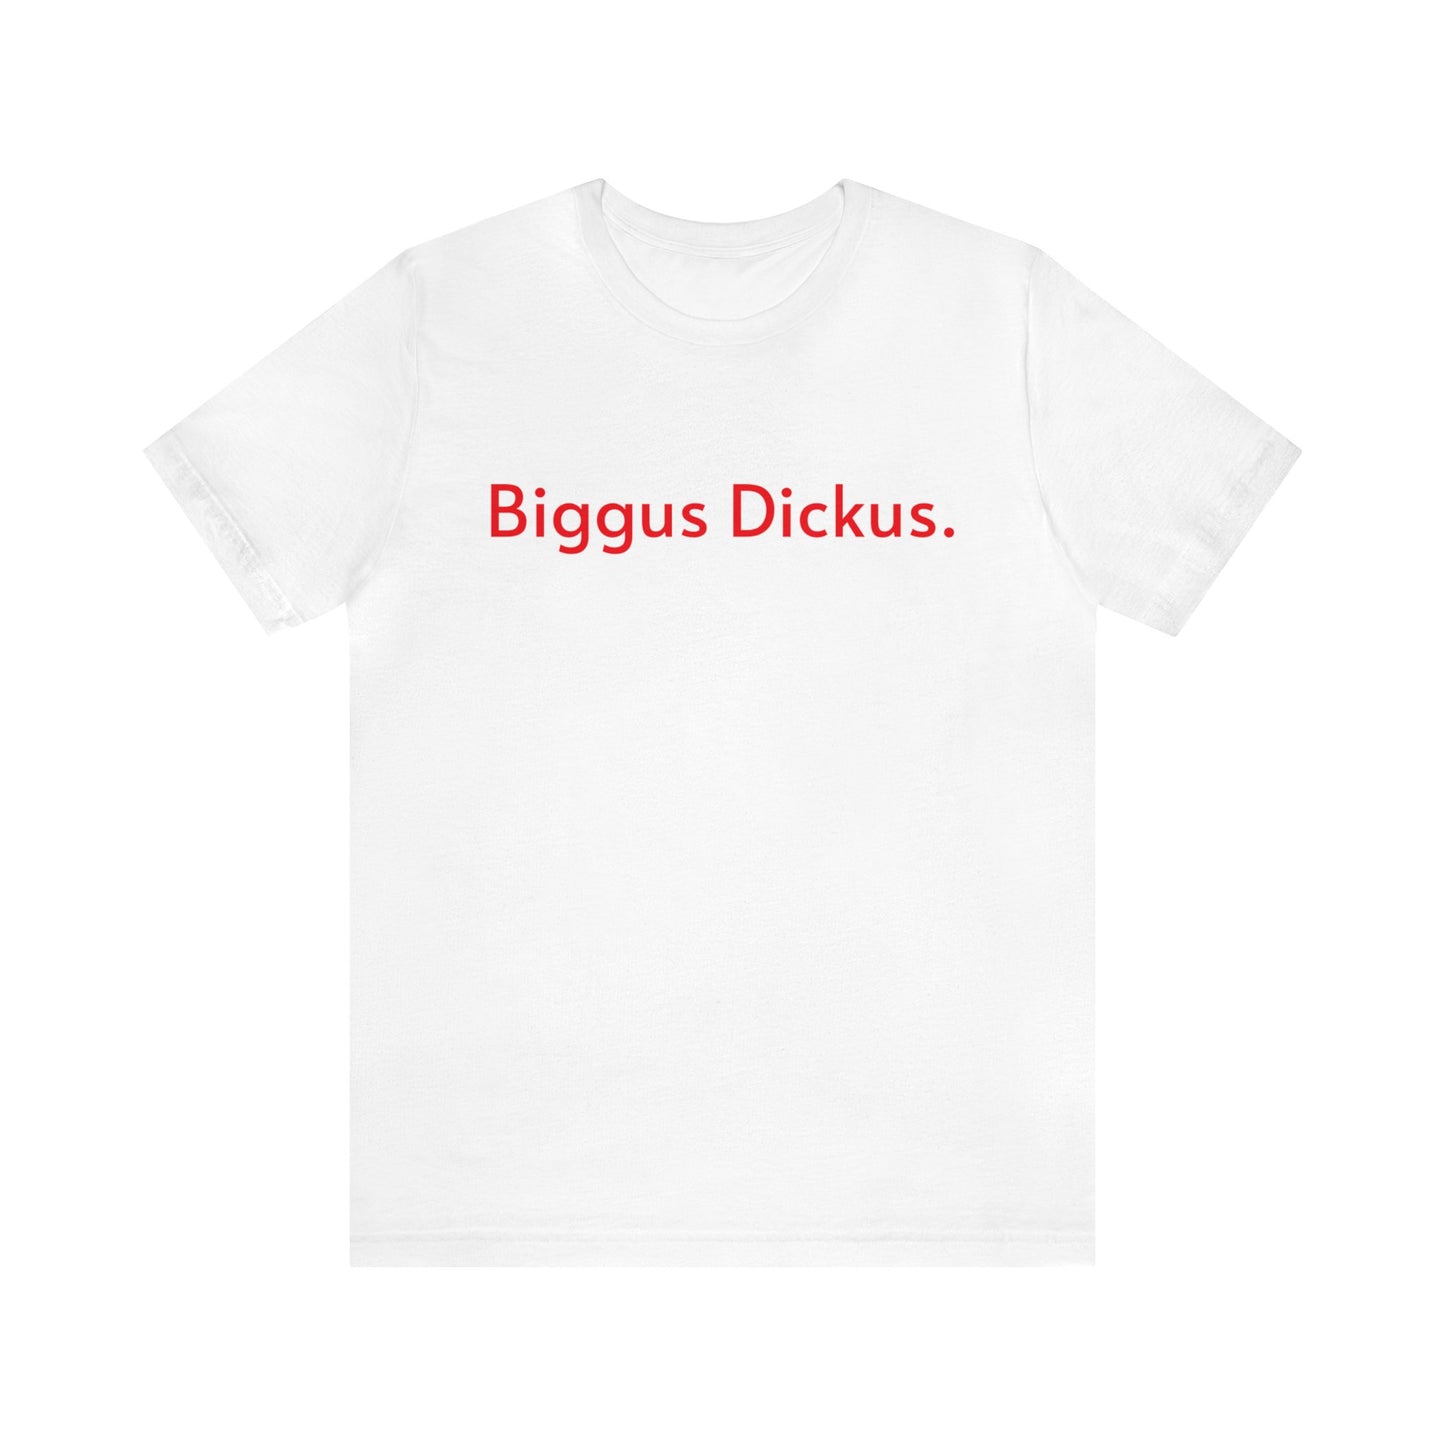 Biggus Dickus.